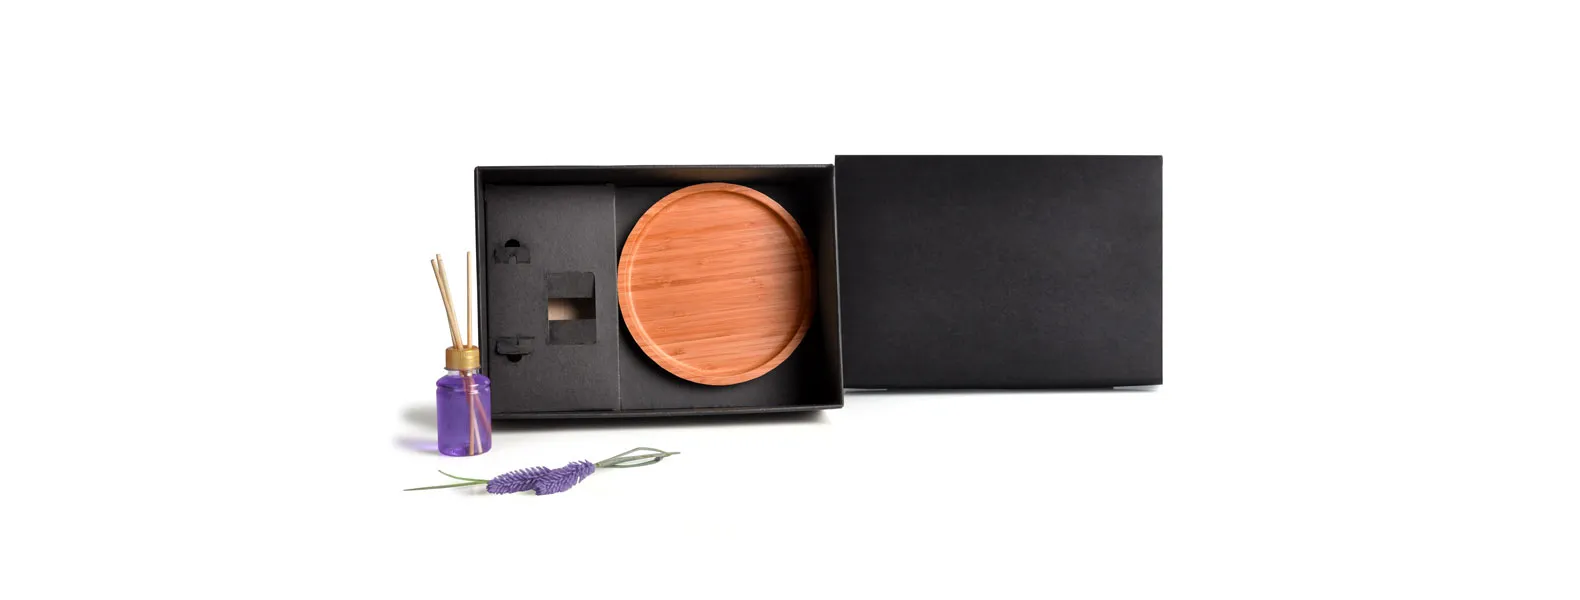 Kit para bandeja e aromatizador. Conta com bandeja redonda em bambu e aromatizador de ambiente com fragrância de lavanda.